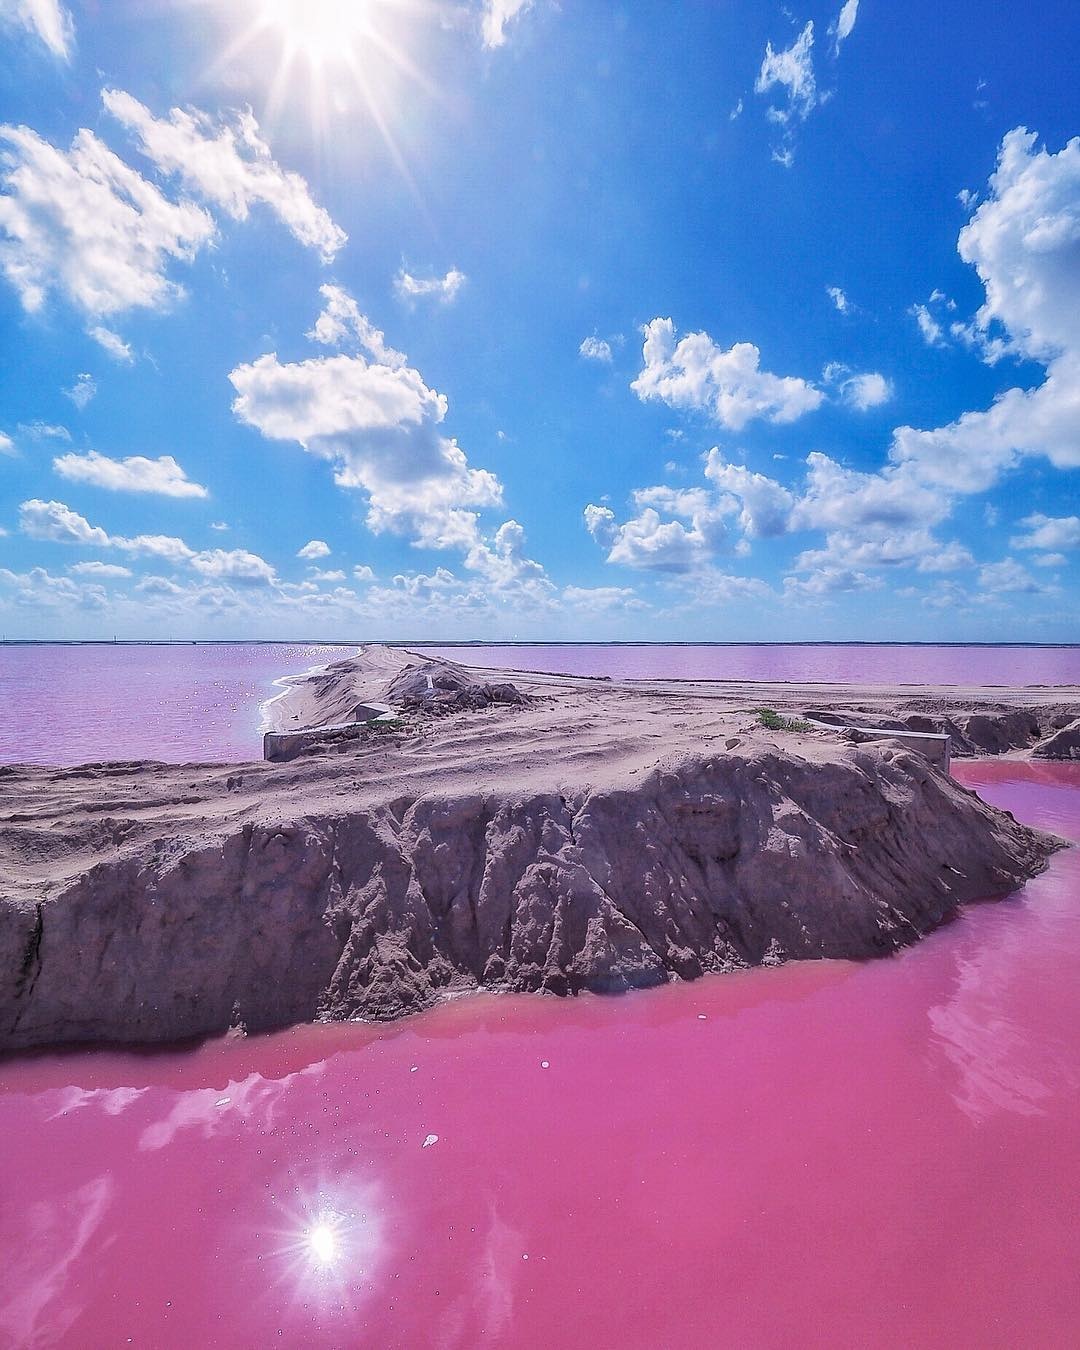 розовое озеро в мексике